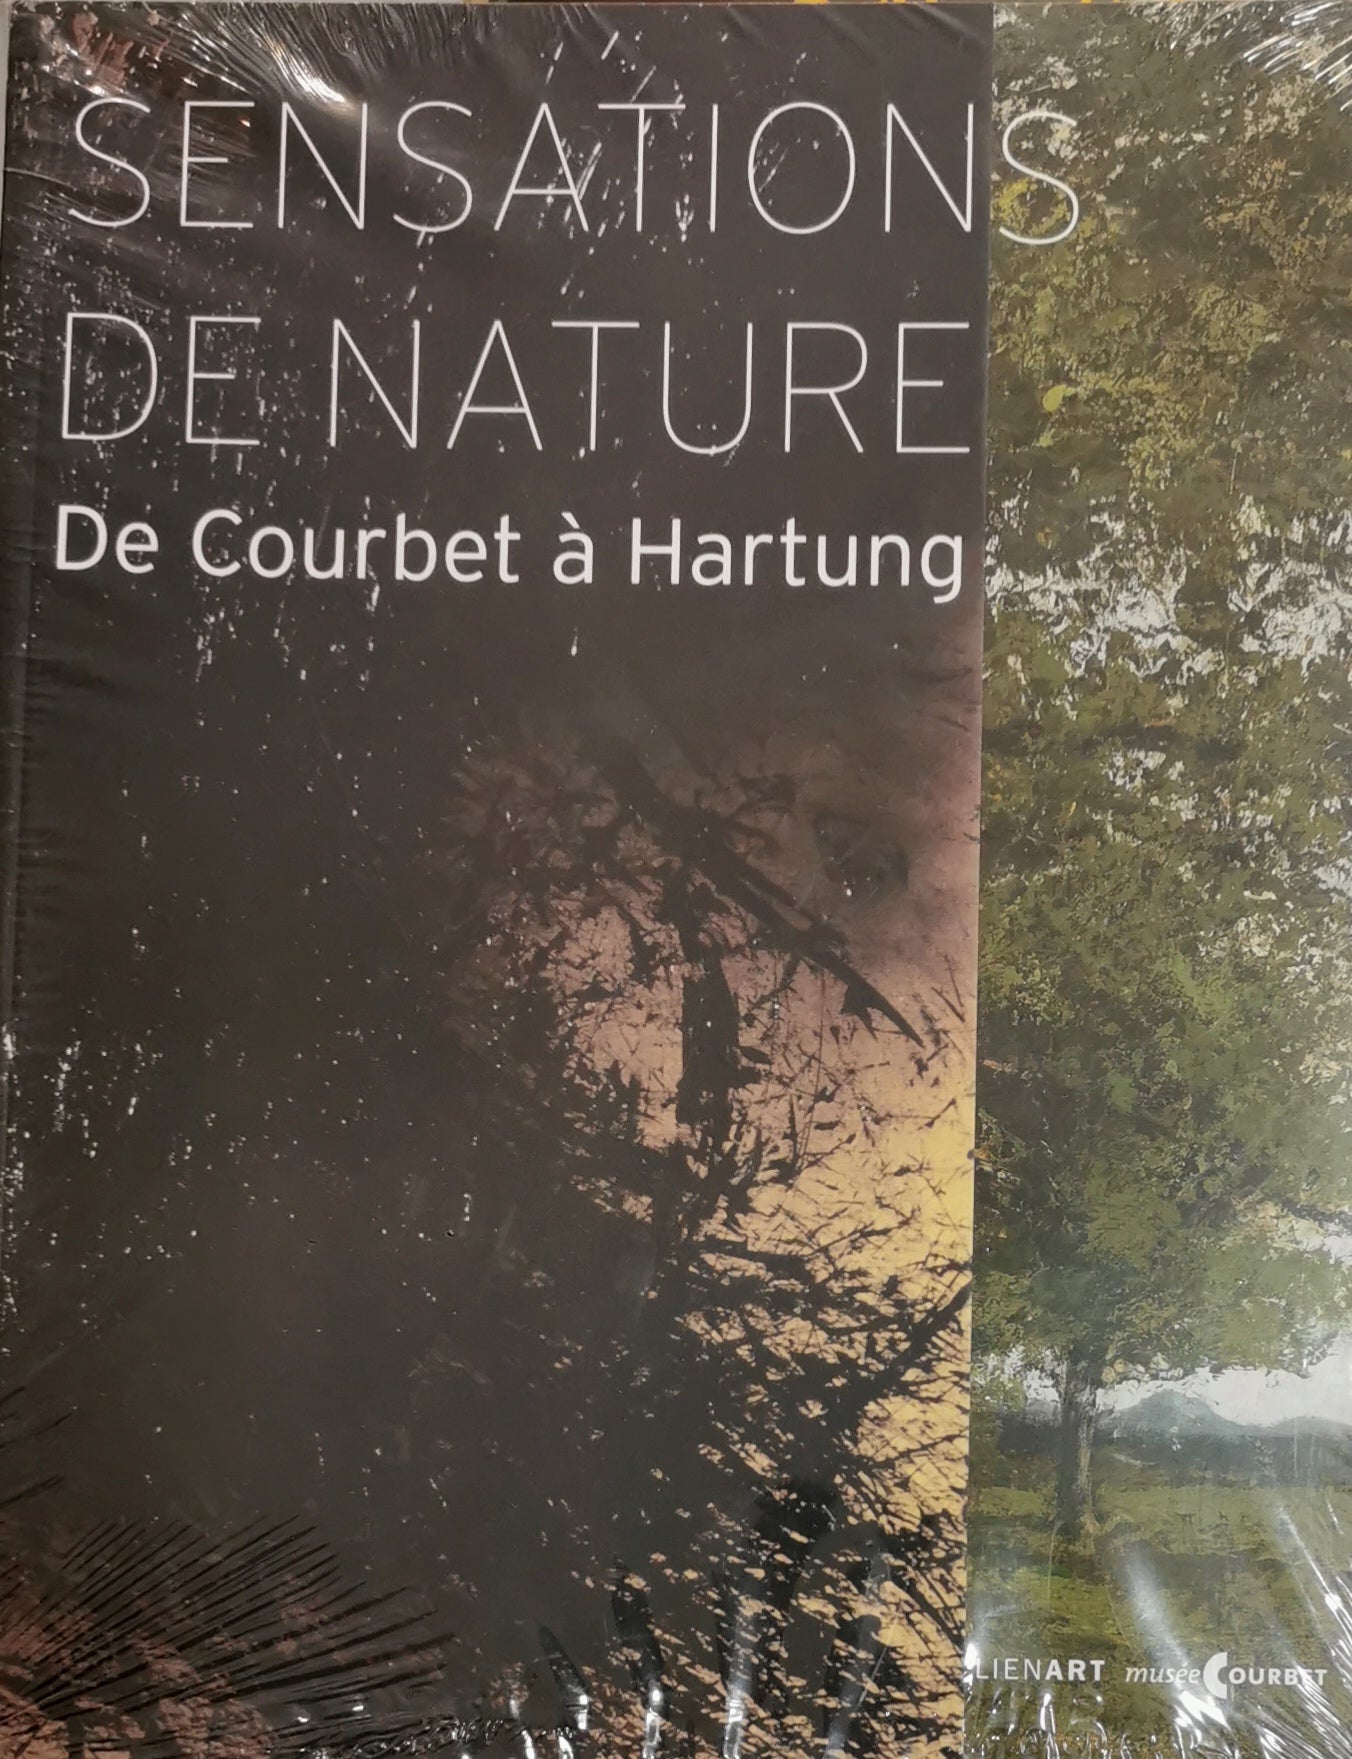 Sensations de nature, De Coubert à Hartung, Collectif, Lienart, 2015.